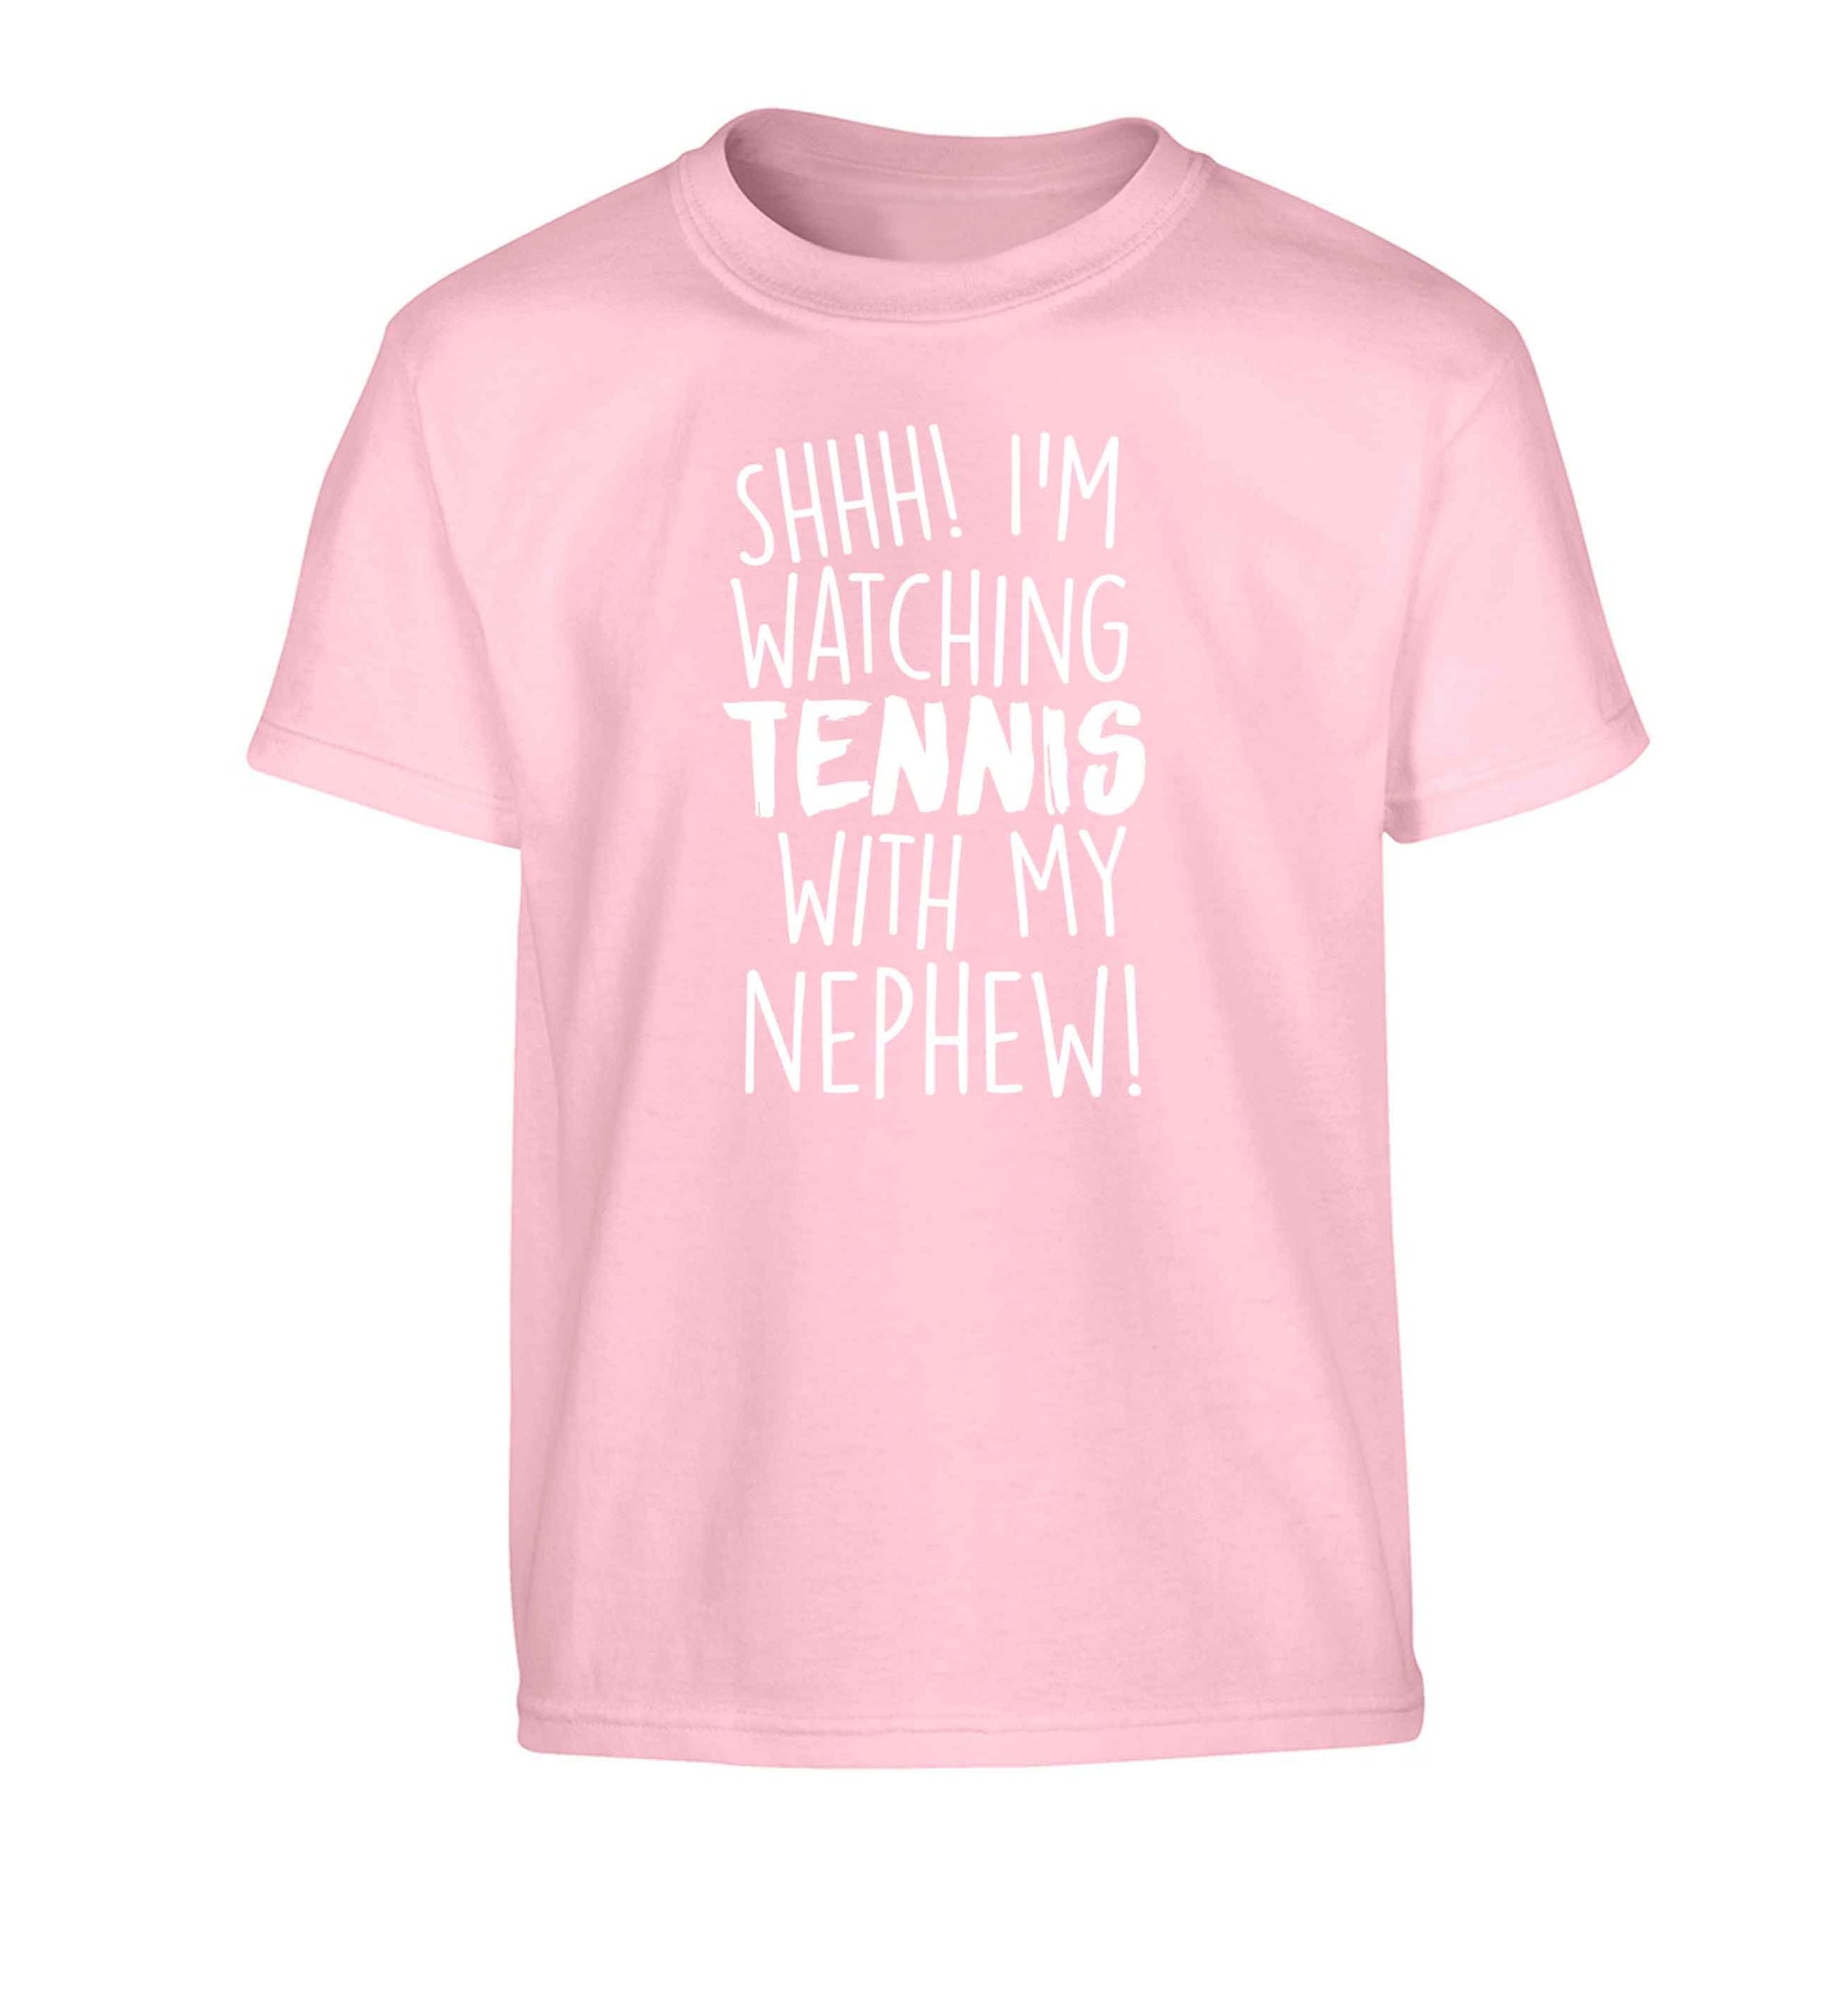 Shh! I'm watching tennis with my nephew! Children's light pink Tshirt 12-13 Years